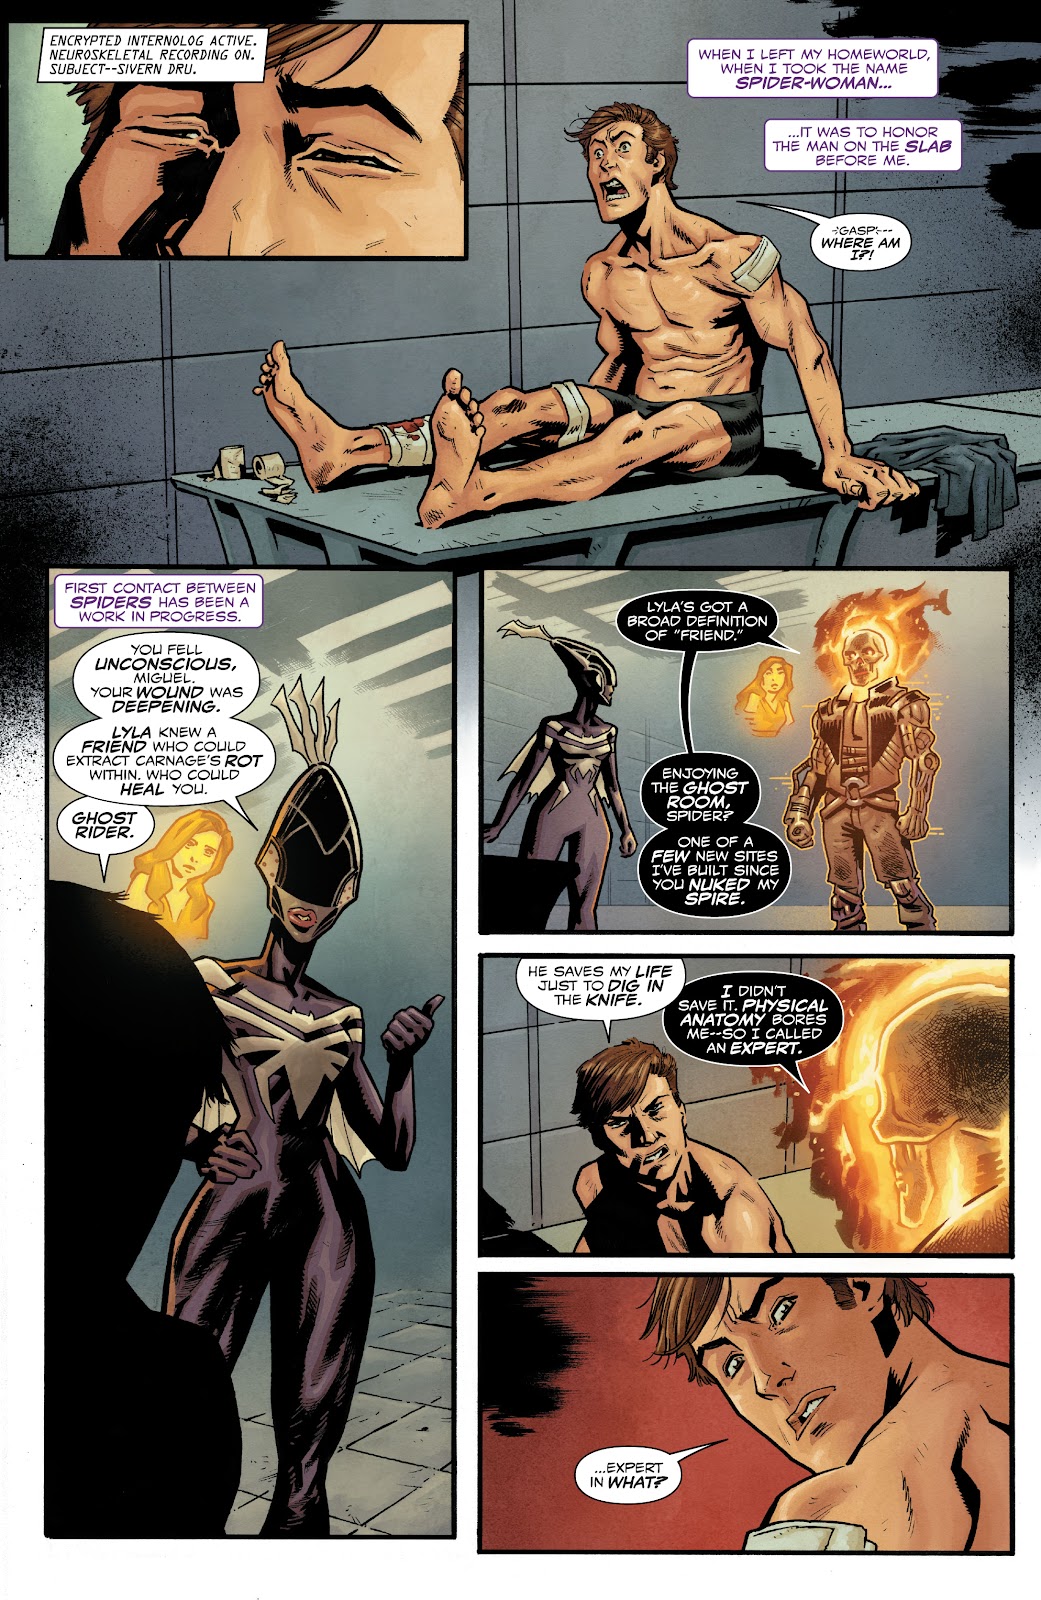 Spider-Man 2099: Dark Genesis issue 2 - Page 5